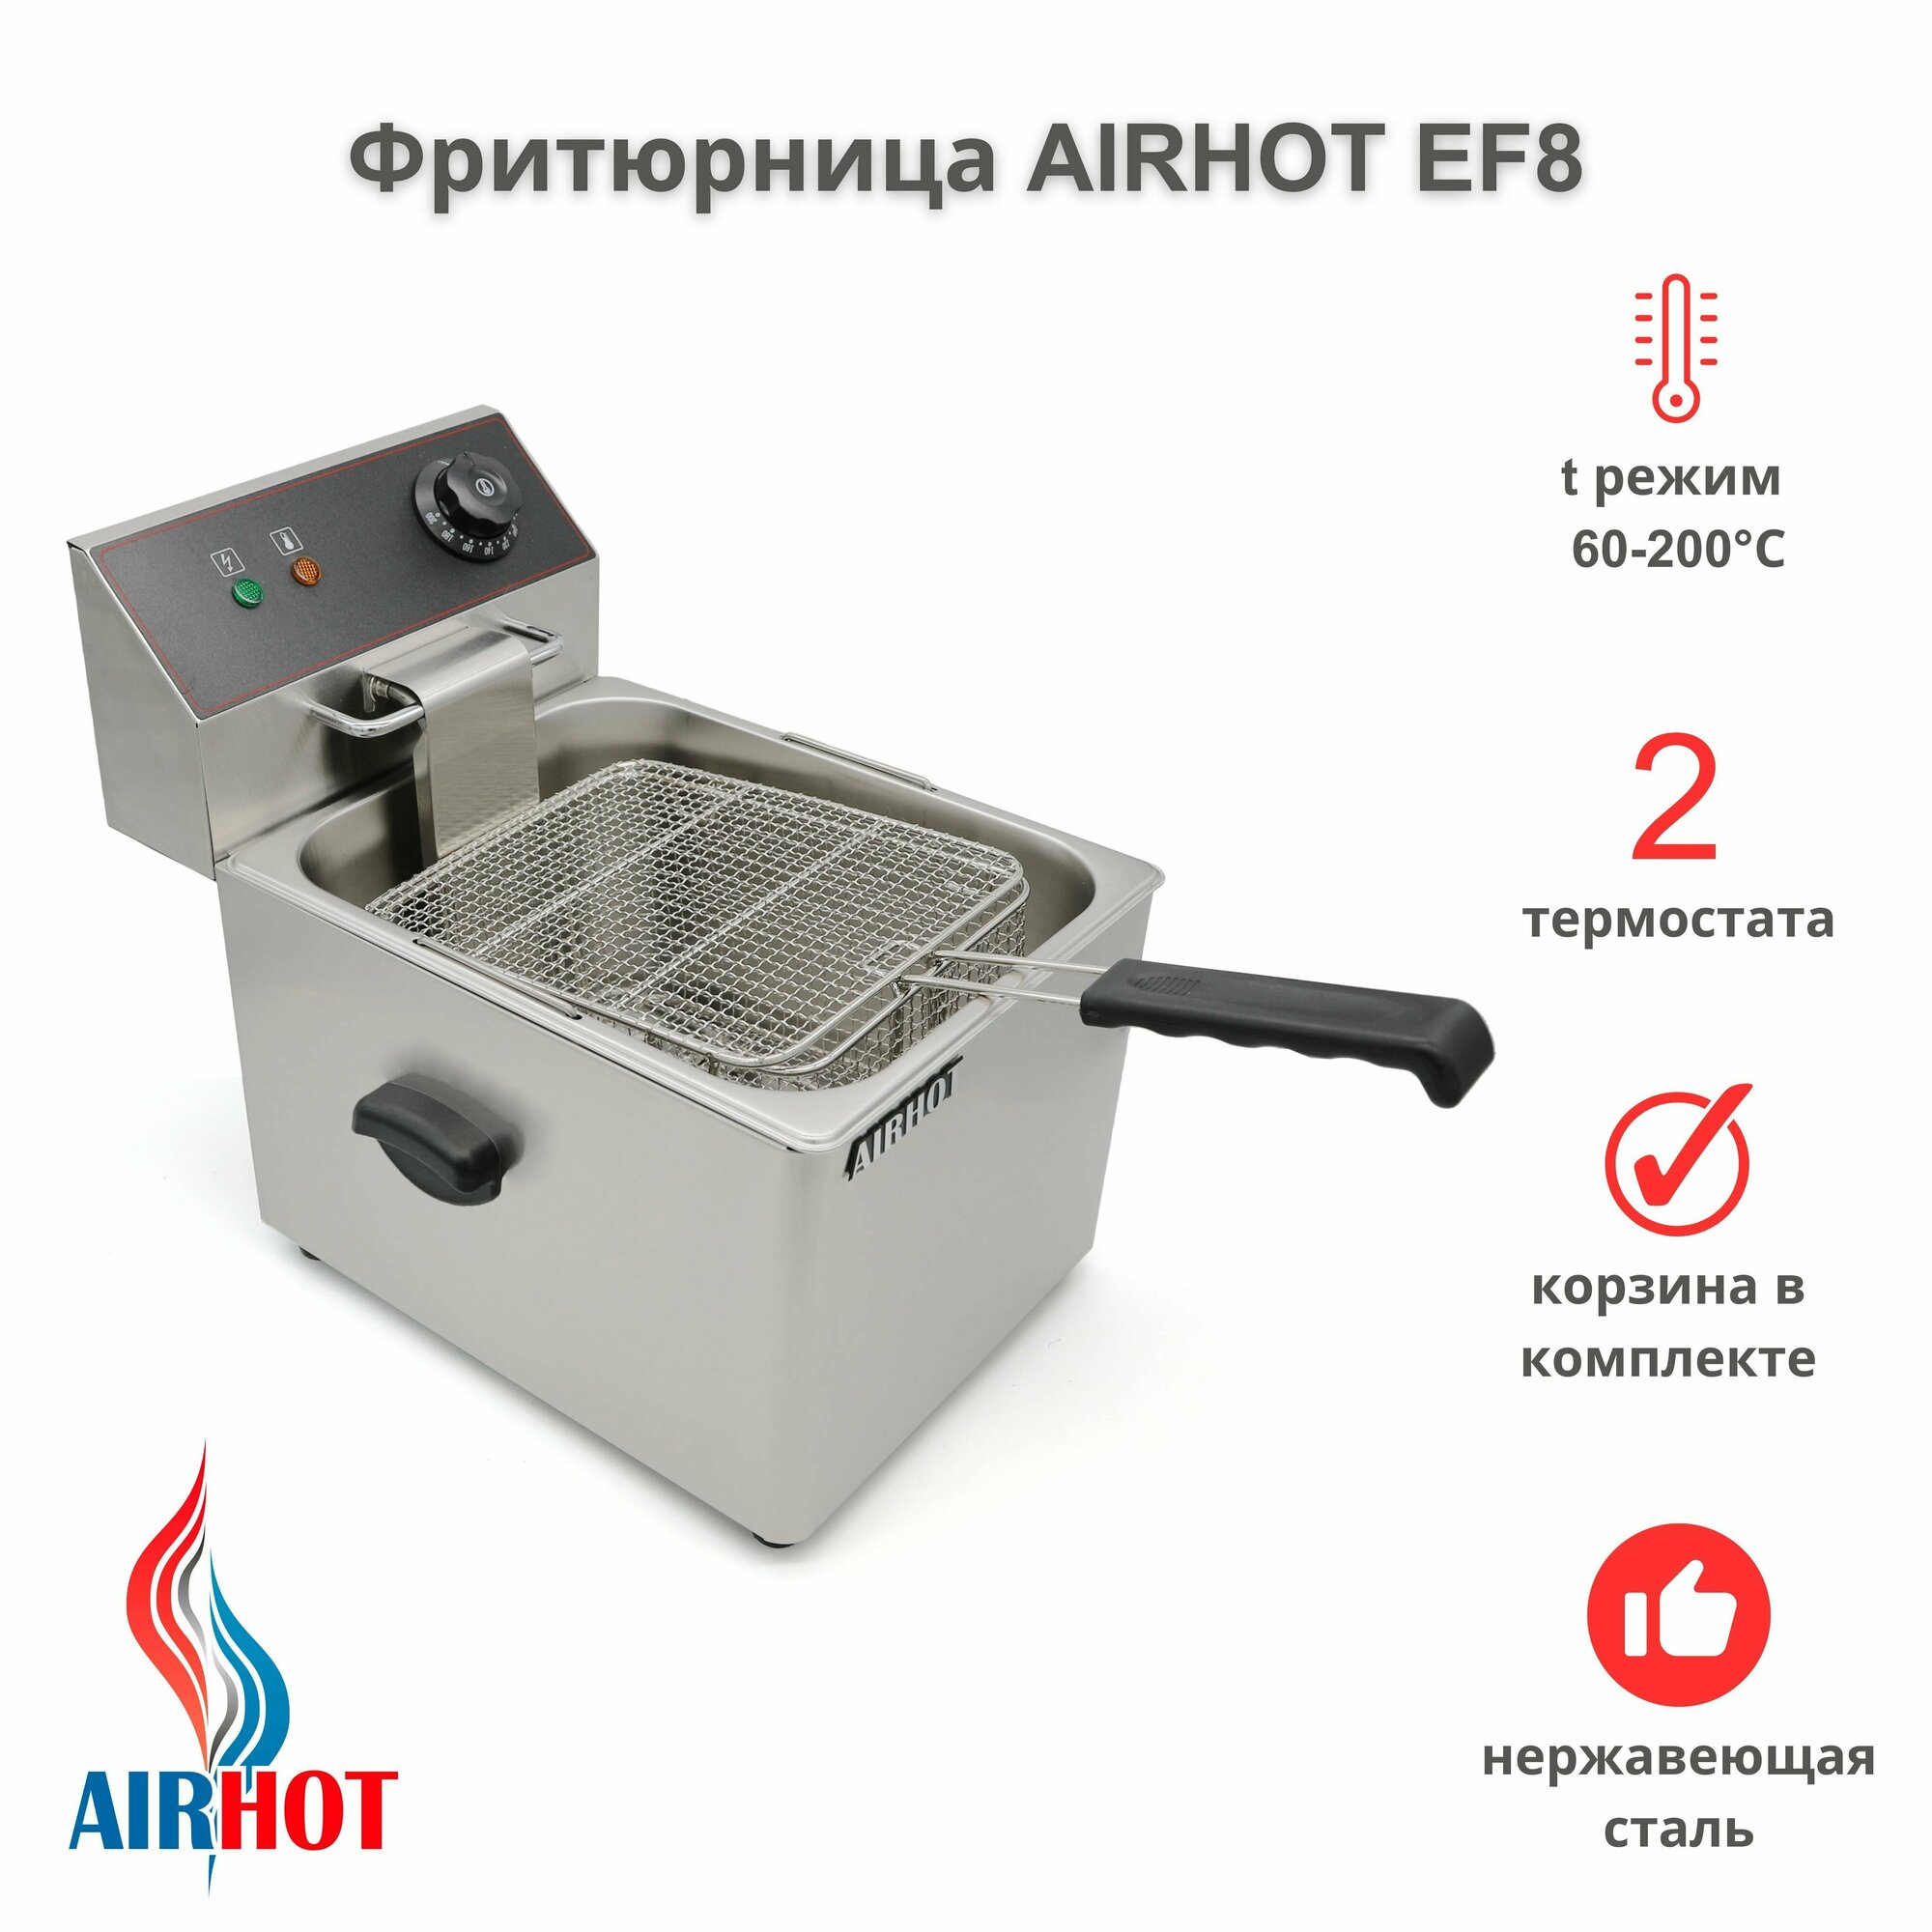 Фритюрница AIRHOT EF8 со съемной чашей 8л, фритюрница профессиональная для кафе, ресторана, электрофритюрница, 3250Вт